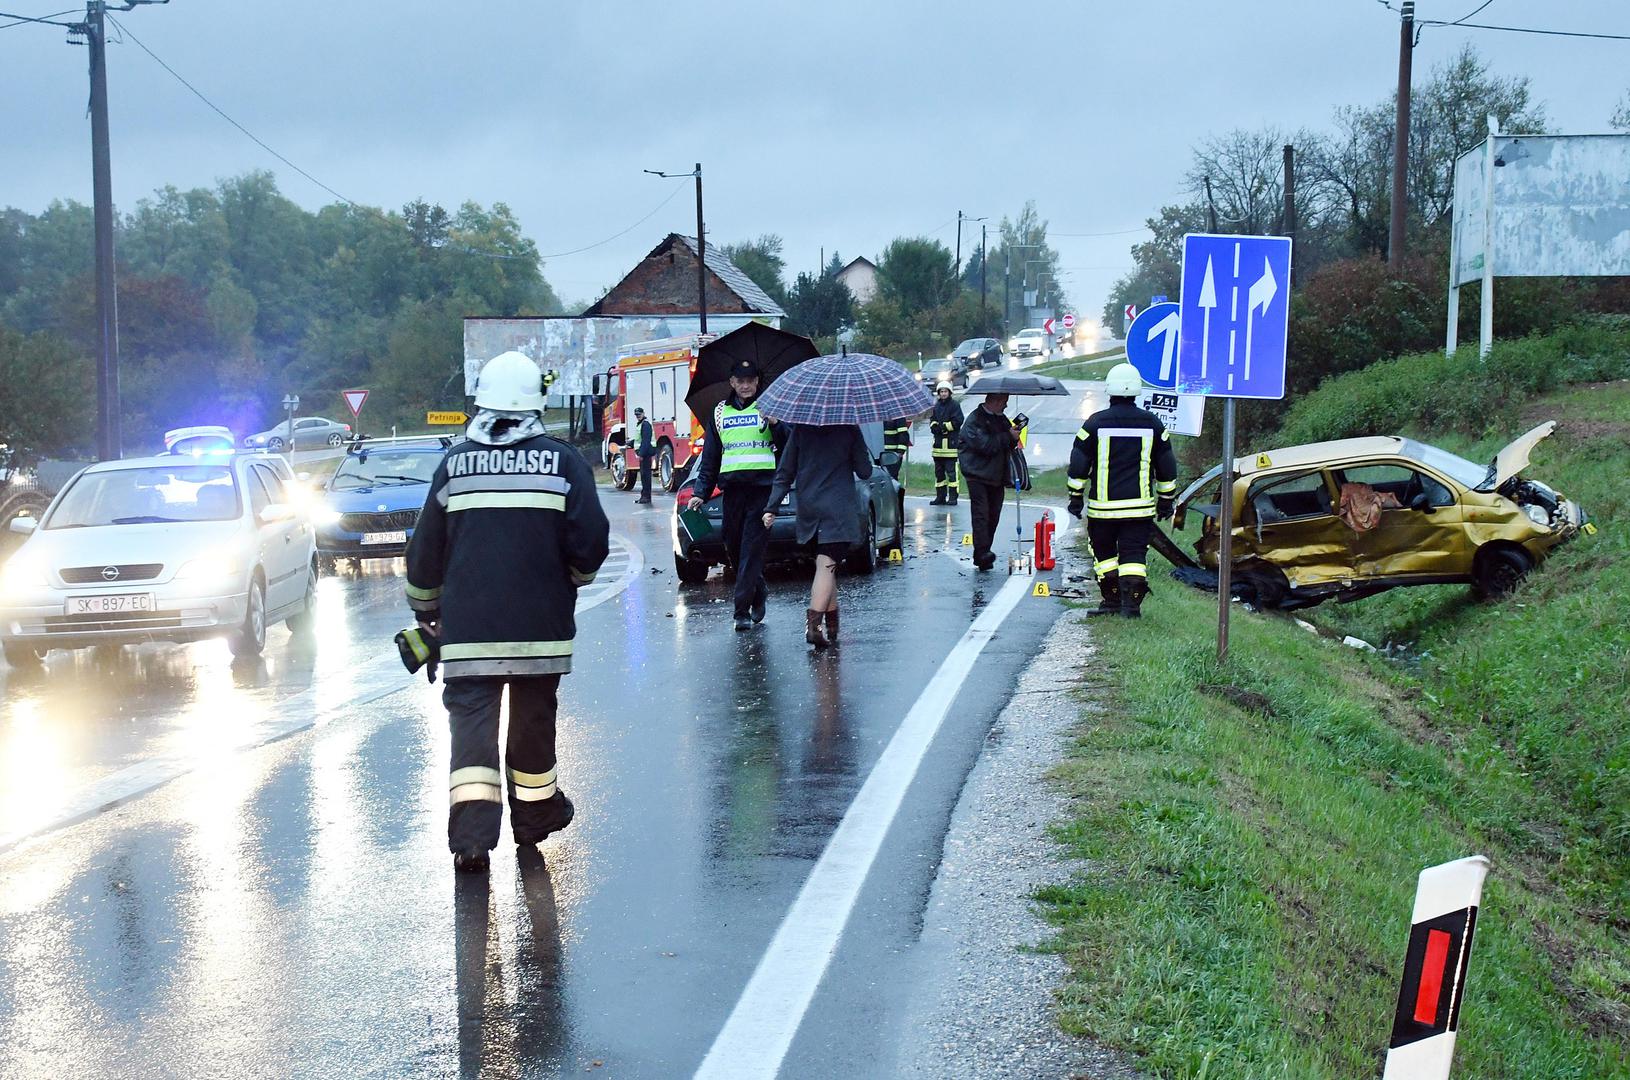 10.10.2021., Zazina - U prometnoj nesreci koja se oko 16,35 sati dogodila na drzavnoj cesti Sisak-Zagreb sudjelovala su dva osobna automobila, pri cemu je jedna osoba poginula. Policija obavlja ocevid

